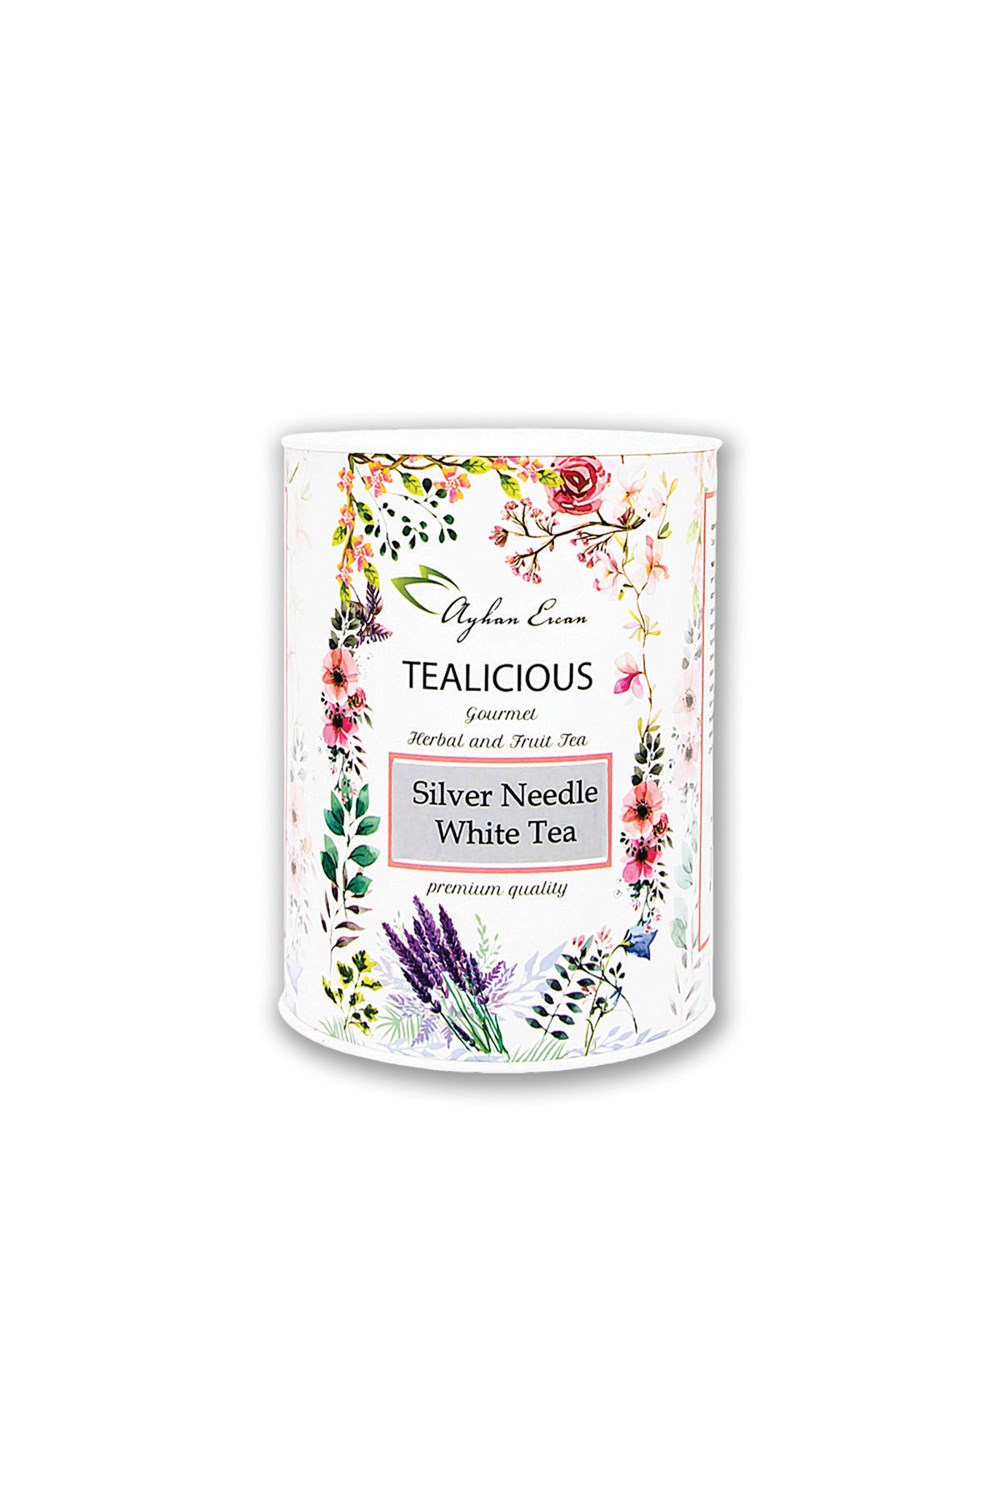 TEALICIOUS Silver Needle White Tea 30g